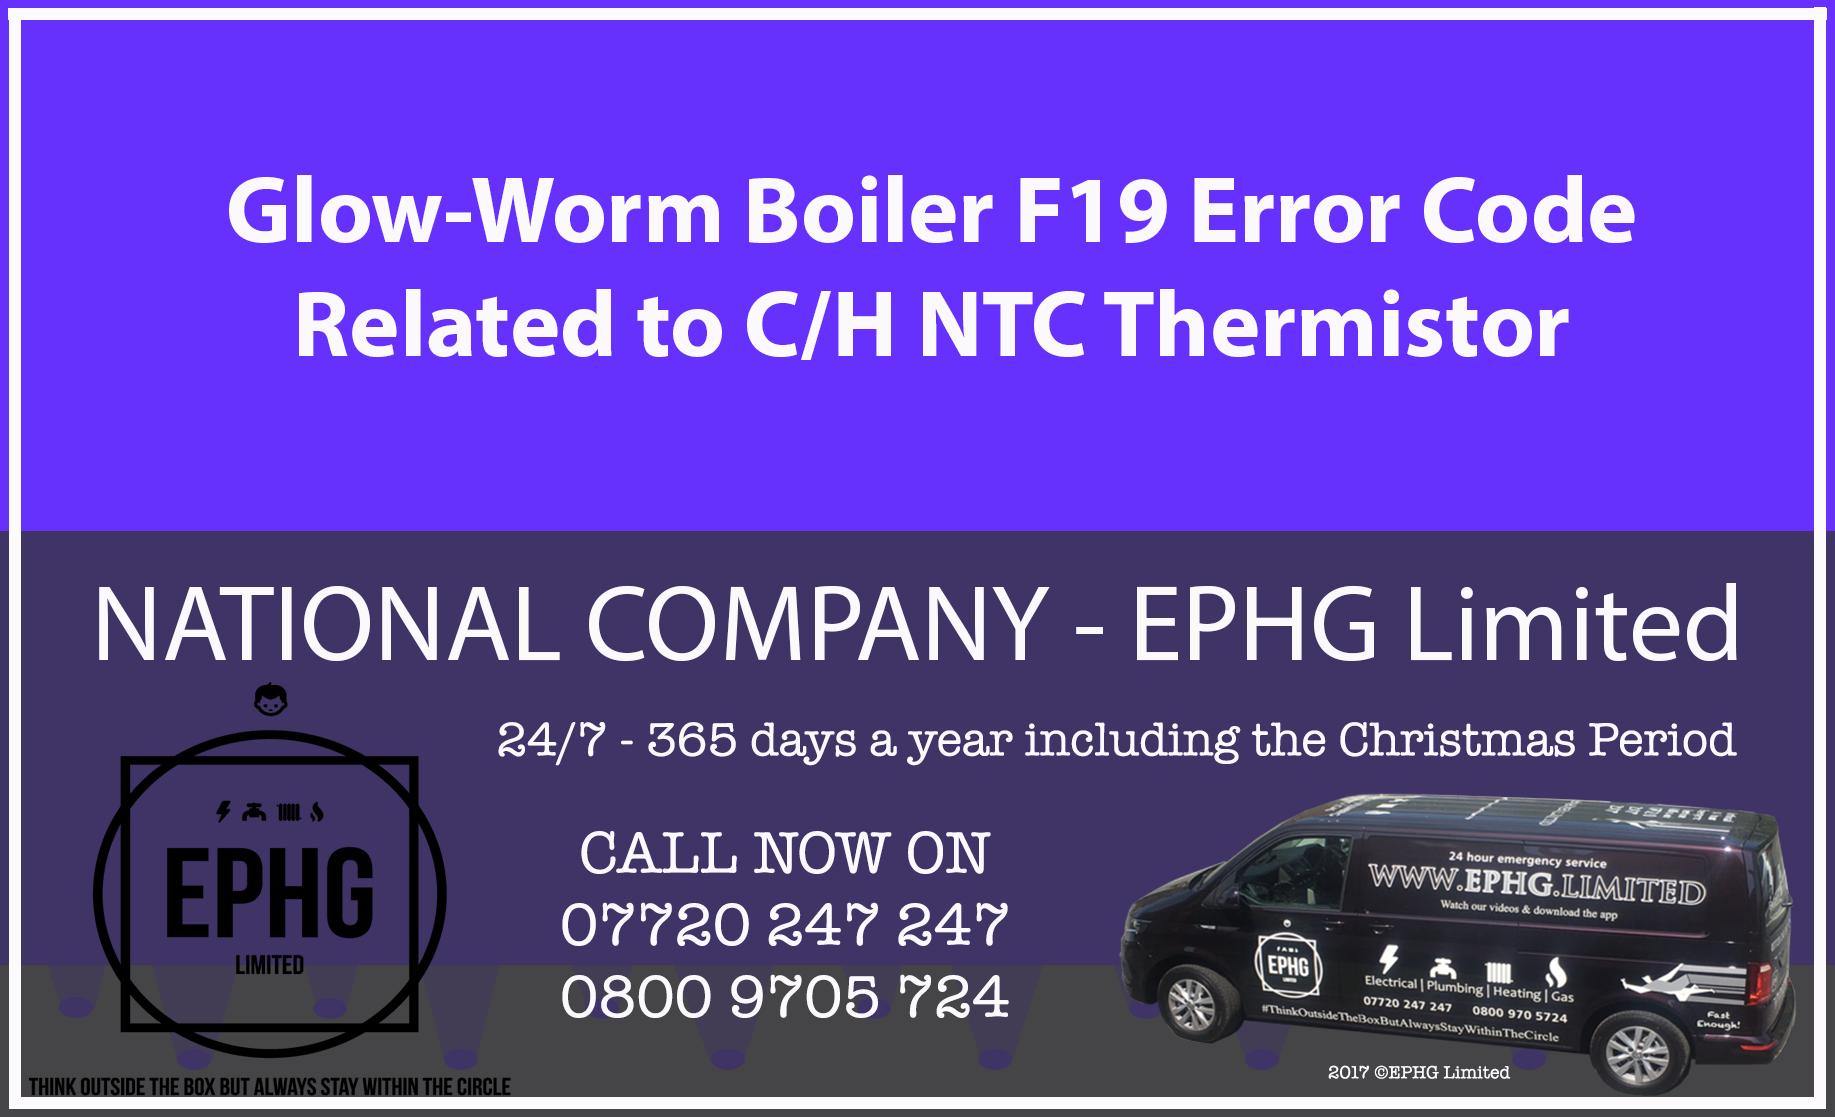 Glow-Worm boiler error code F19